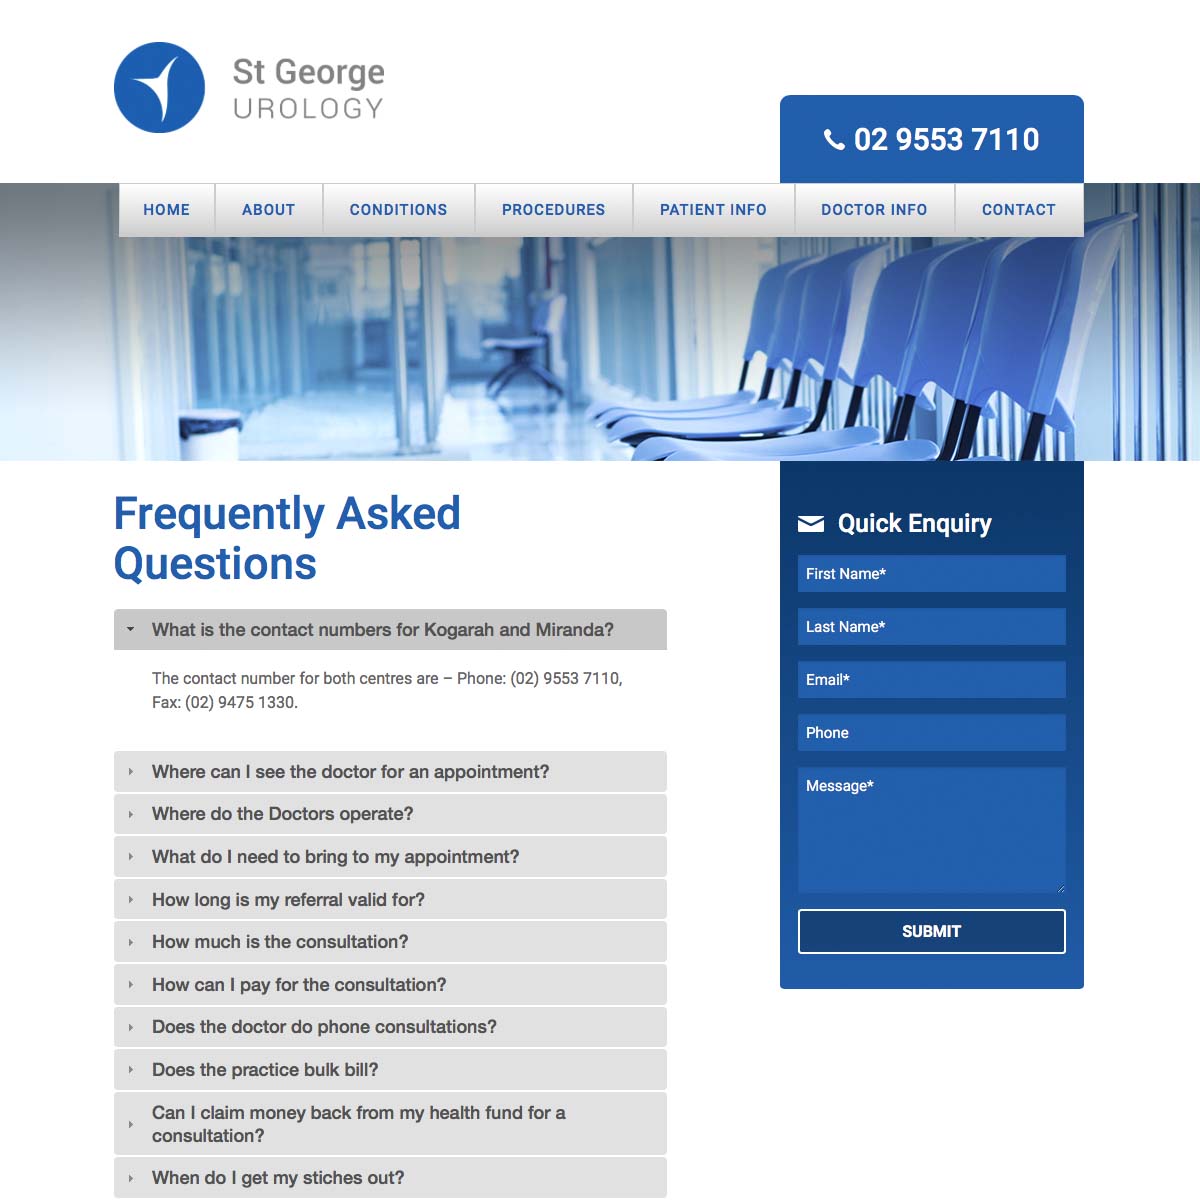 St George Urology FAQ